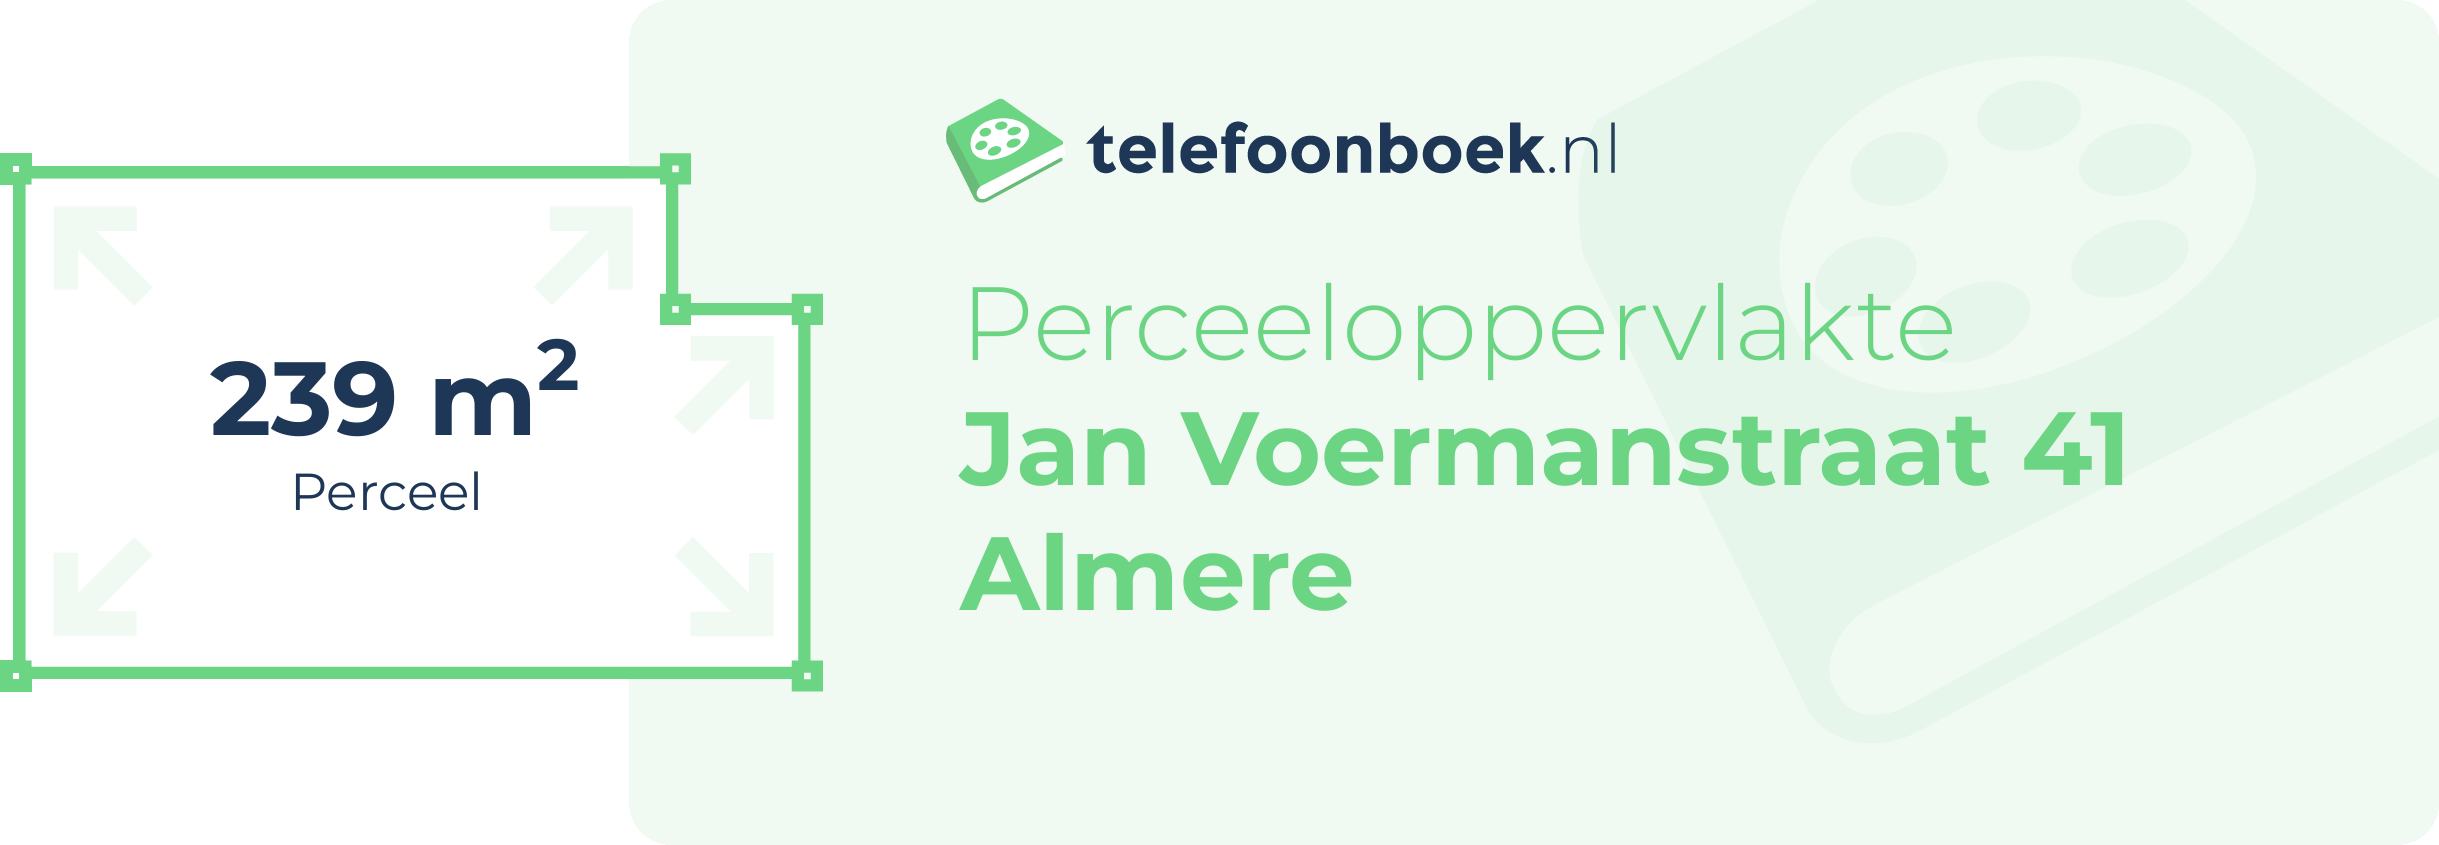 Perceeloppervlakte Jan Voermanstraat 41 Almere